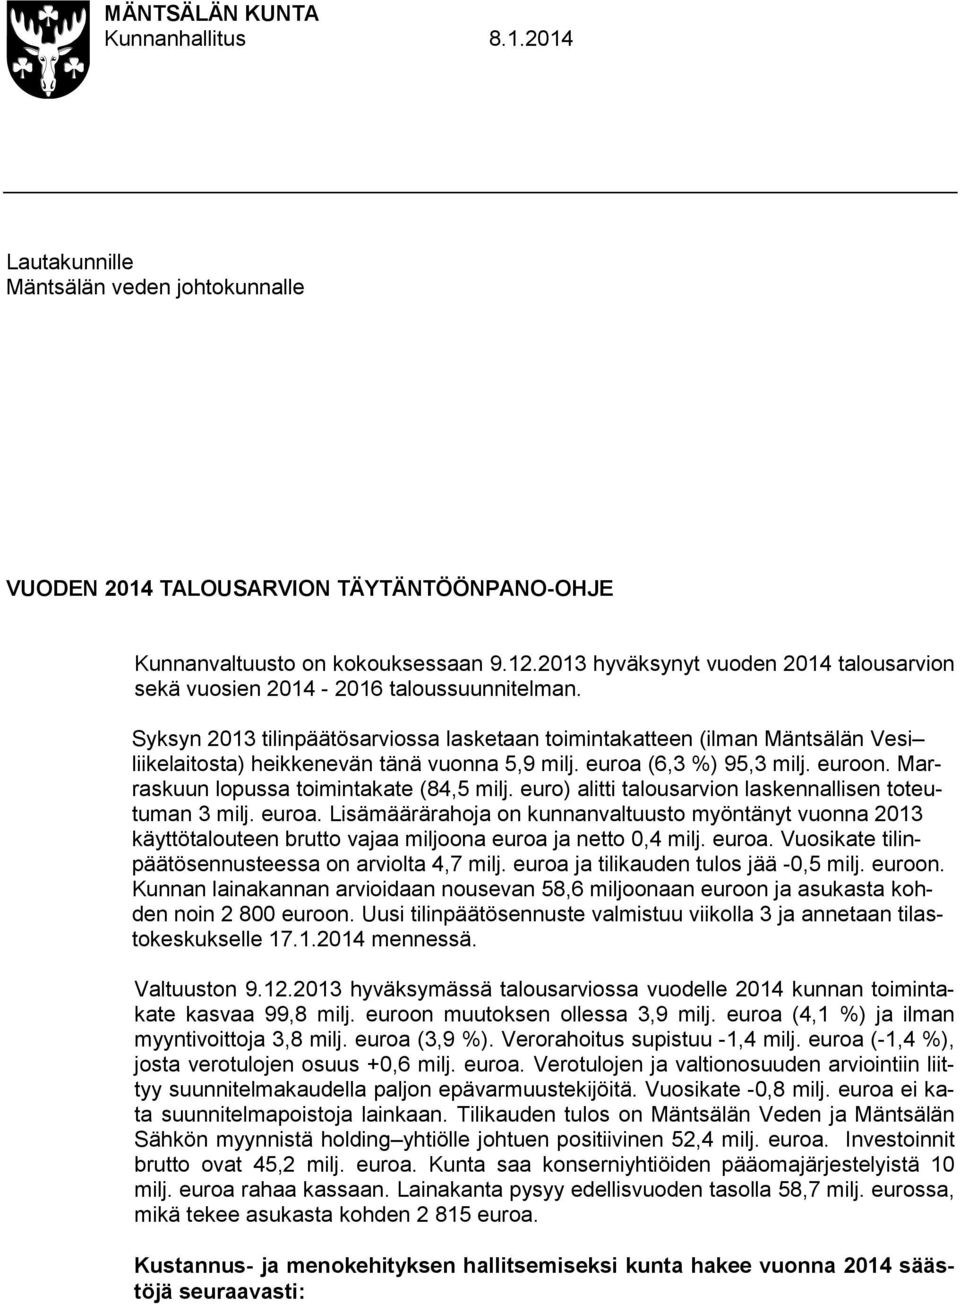 Syksyn 2013 tilinpäätösarviossa lasketaan toimintakatteen (ilman Mäntsälän Vesi liikelaitosta) heikkenevän tänä vuonna 5,9 milj. euroa (6,3 %) 95,3 milj. euroon.